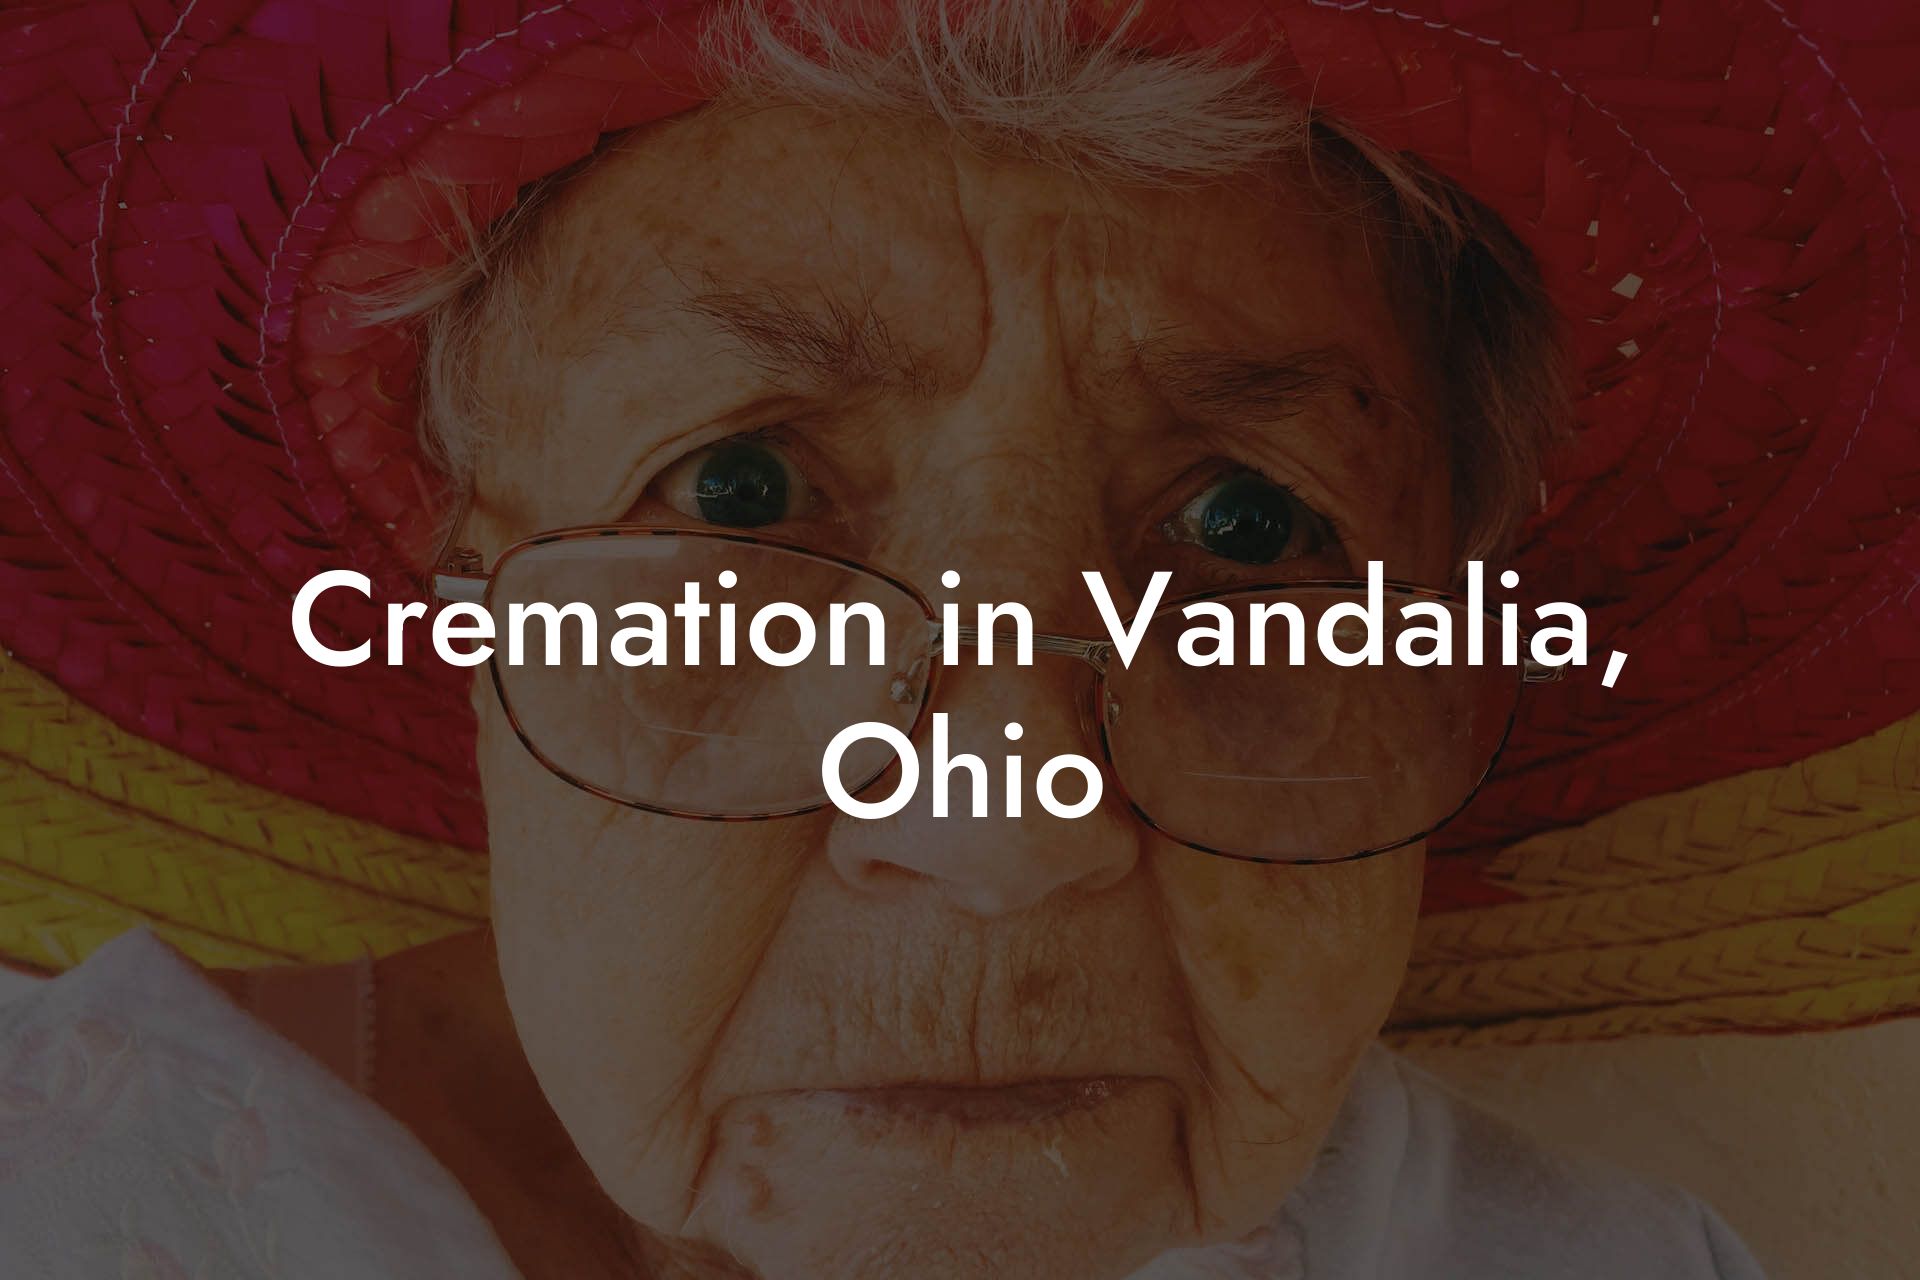 Cremation in Vandalia, Ohio